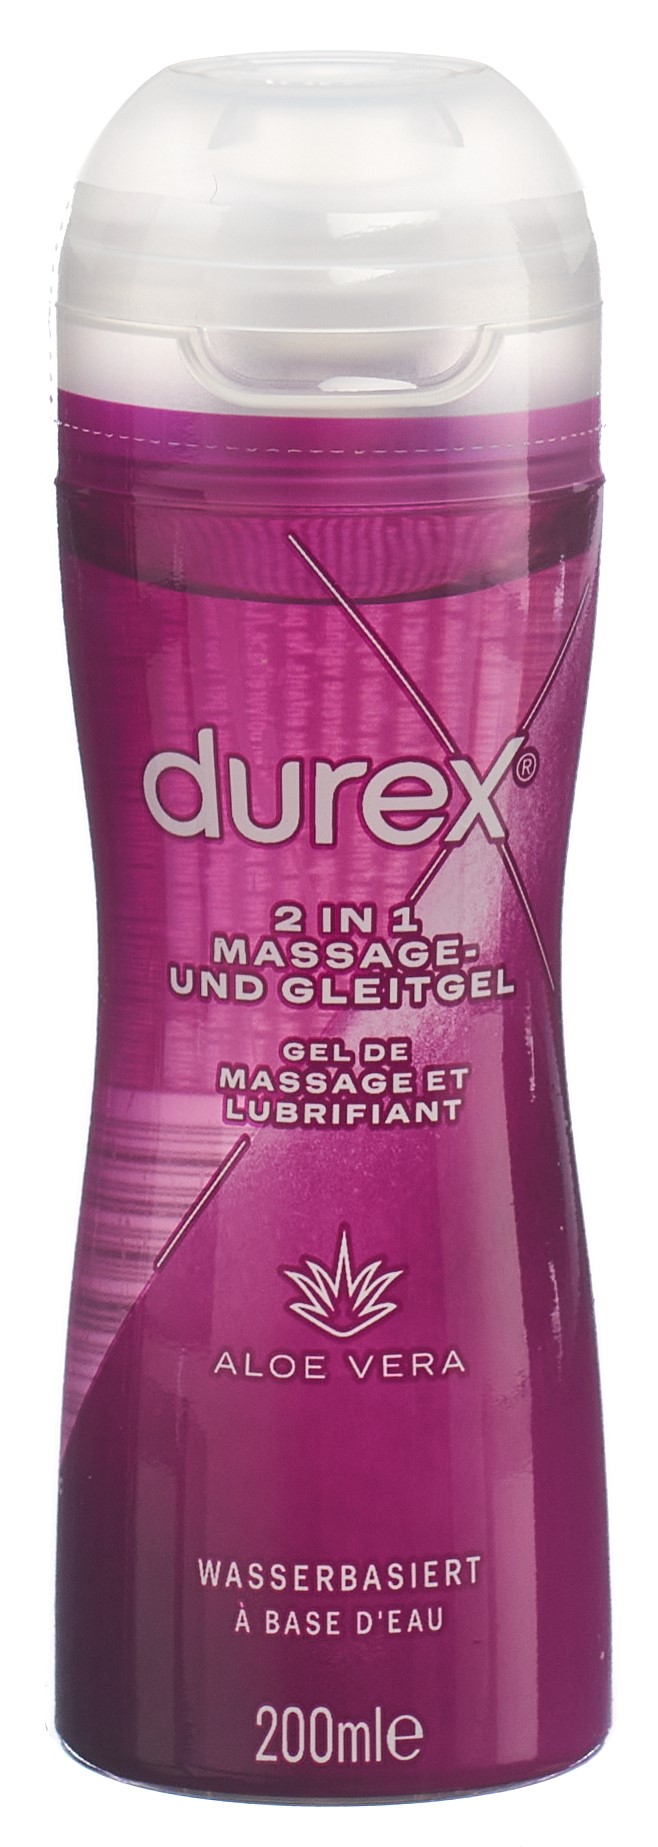 Durex Play 2in1 Massage & Gleitgel Aloe Vera Massagegel Gleitmittel 3x200ml  online kaufen